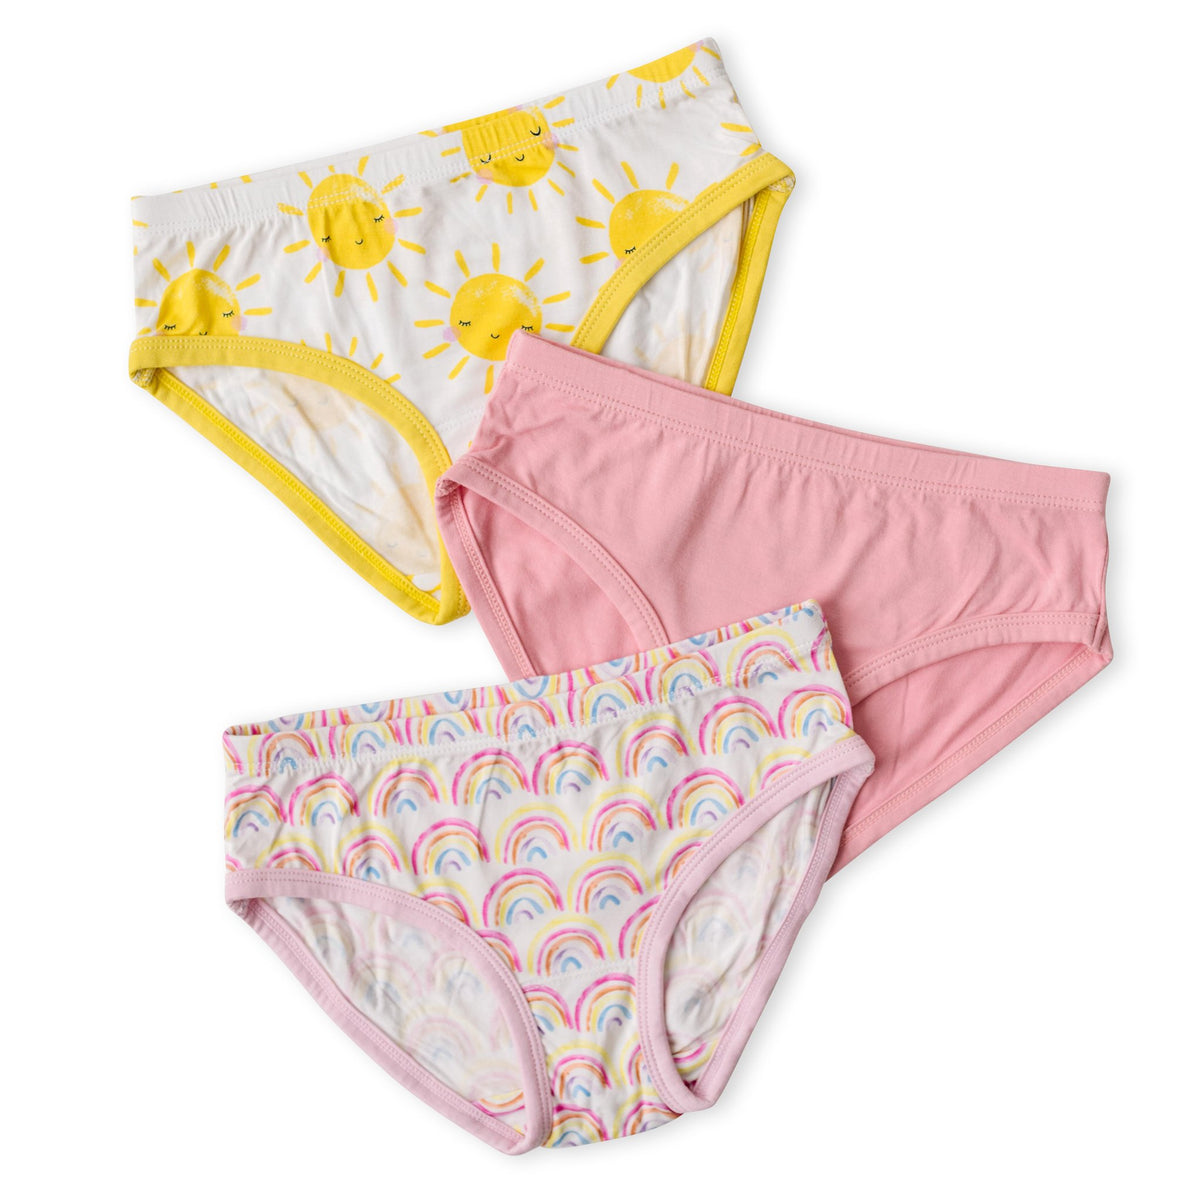 Toddler Girls' Nano Llama 3 Pack Bikini Underwear